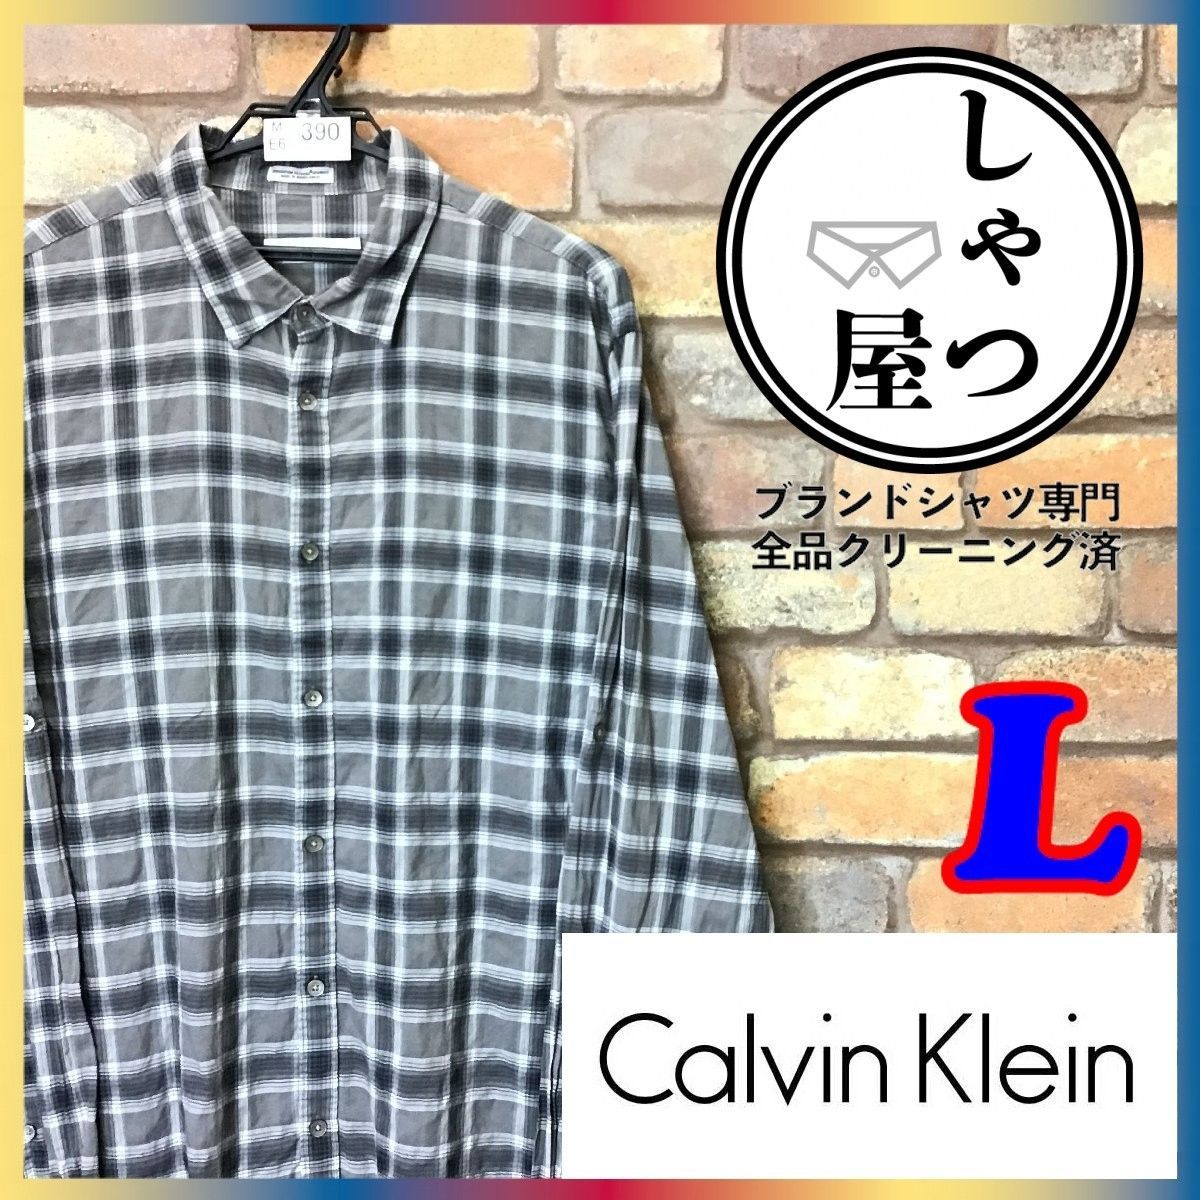 CalvinKleinカルバンクラインロンtシャツメンズ長袖ネイビー紺LY2K